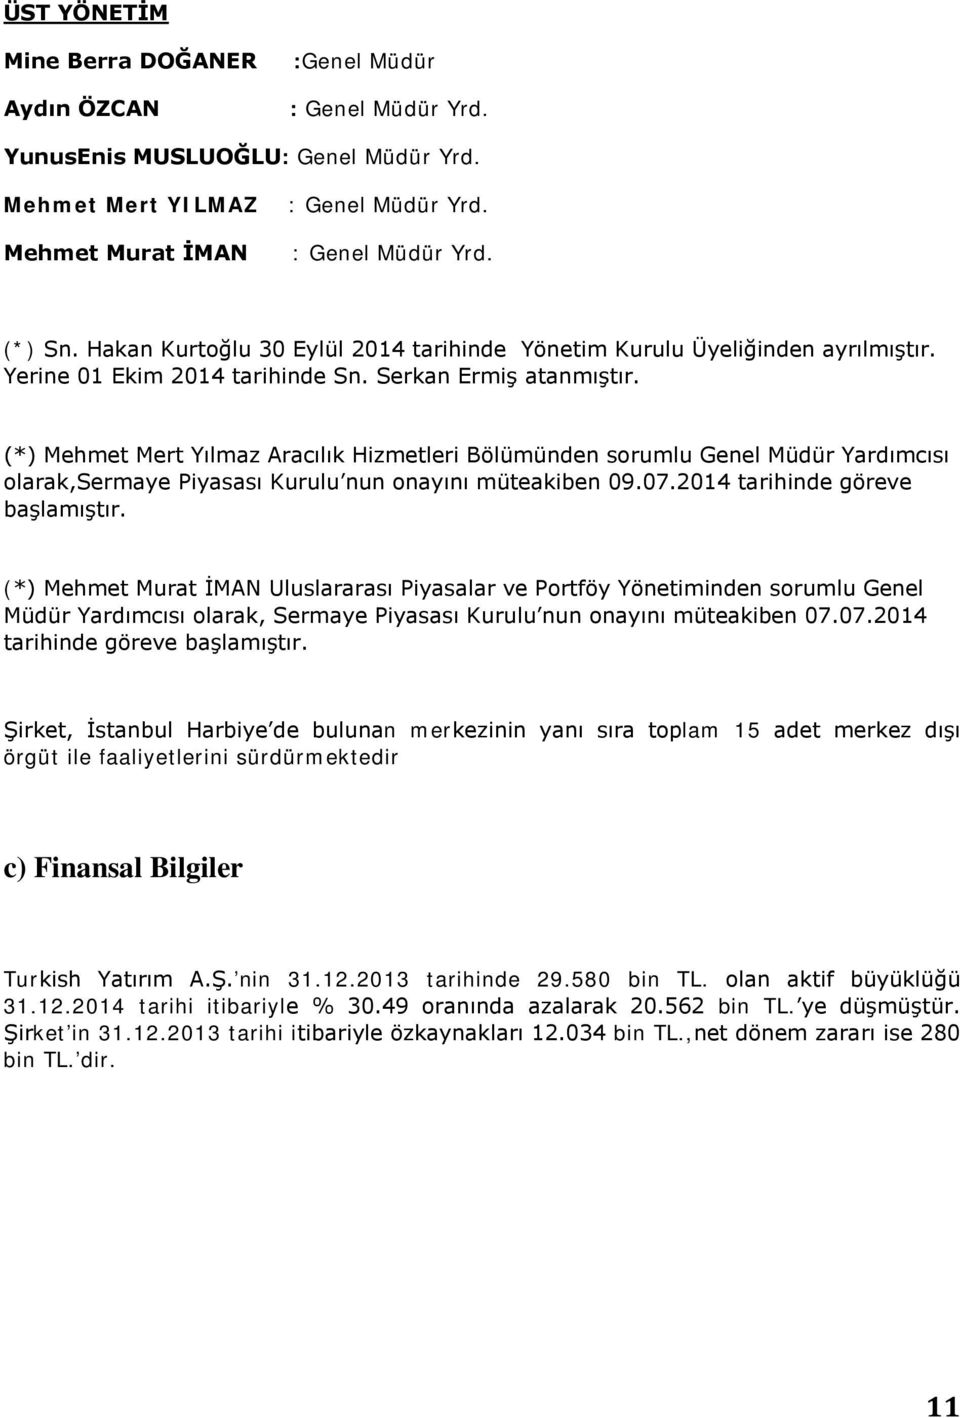 (*) Mehmet Mert Yılmaz Aracılık Hizmetleri Bölümünden sorumlu Genel Müdür Yardımcısı olarak,sermaye Piyasası Kurulu nun onayını müteakiben 09.07.2014 tarihinde göreve başlamıştır.